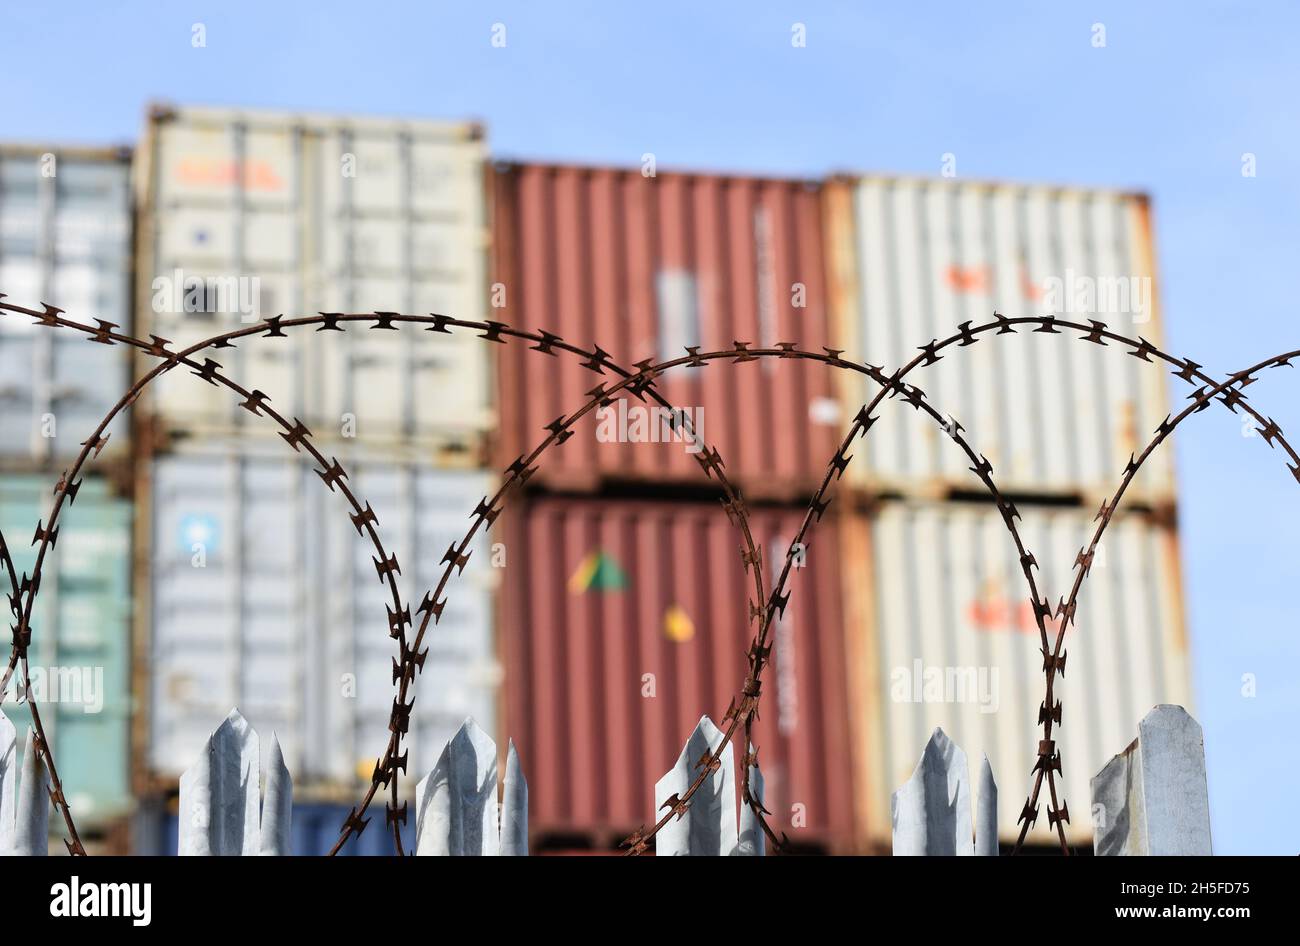 Frachtschiffcontainer, die hoch in einem geschäftigen britischen Hafen gestapelt sind, hinter einem Zaun mit Stacheldraht, der im Mittelpunkt steht. Stockfoto